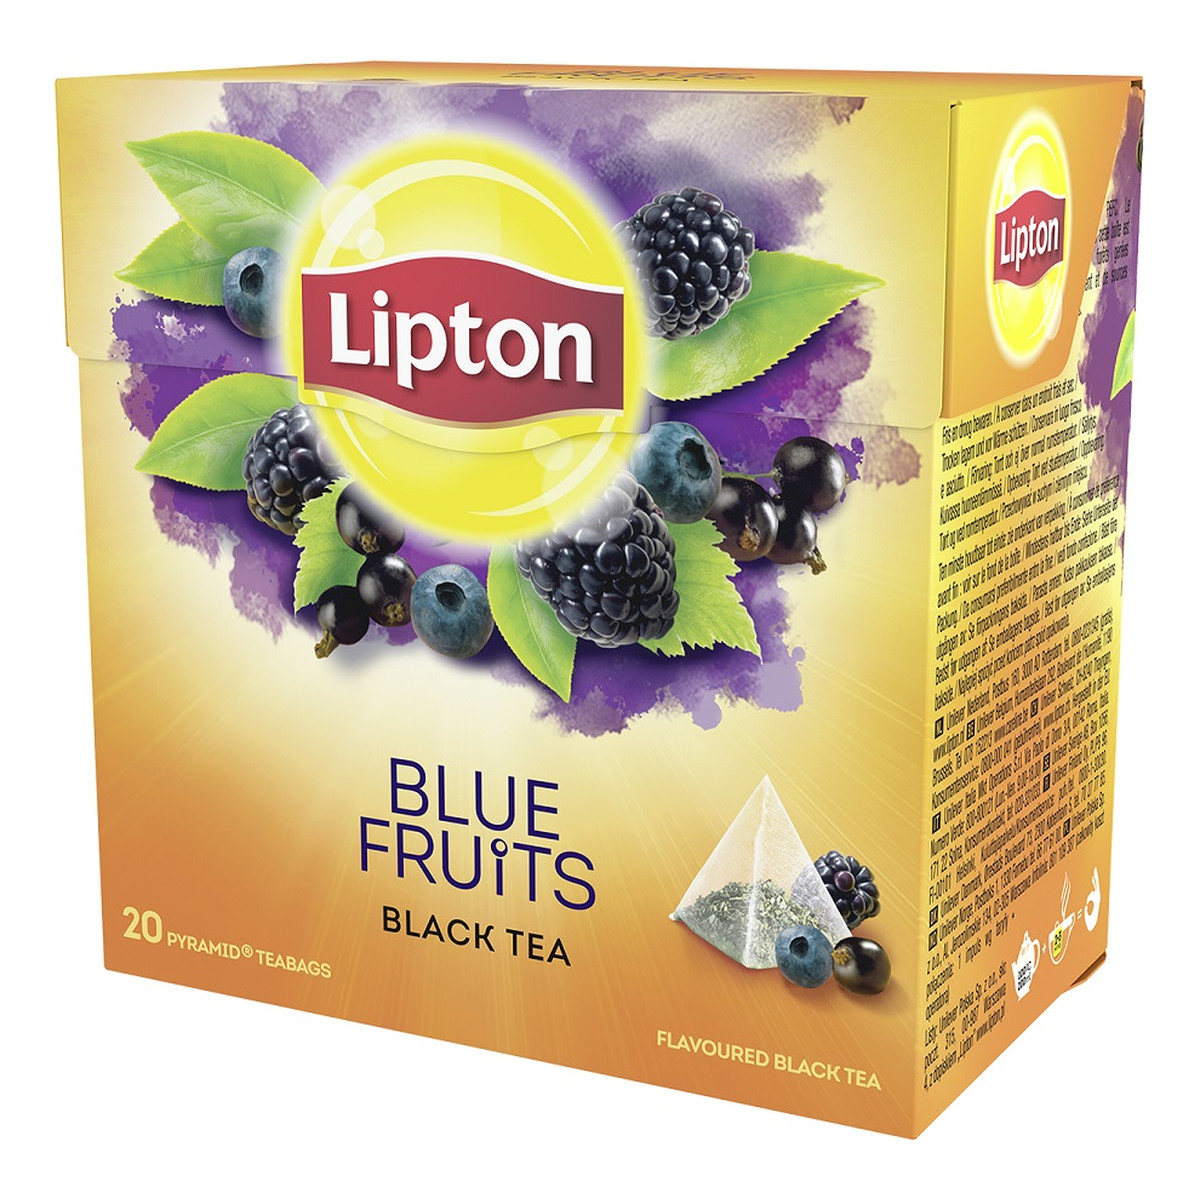 Lipton Black Tea herbata czarna aromatyzowana Owoce Jagodowe 20 piramidek 34g